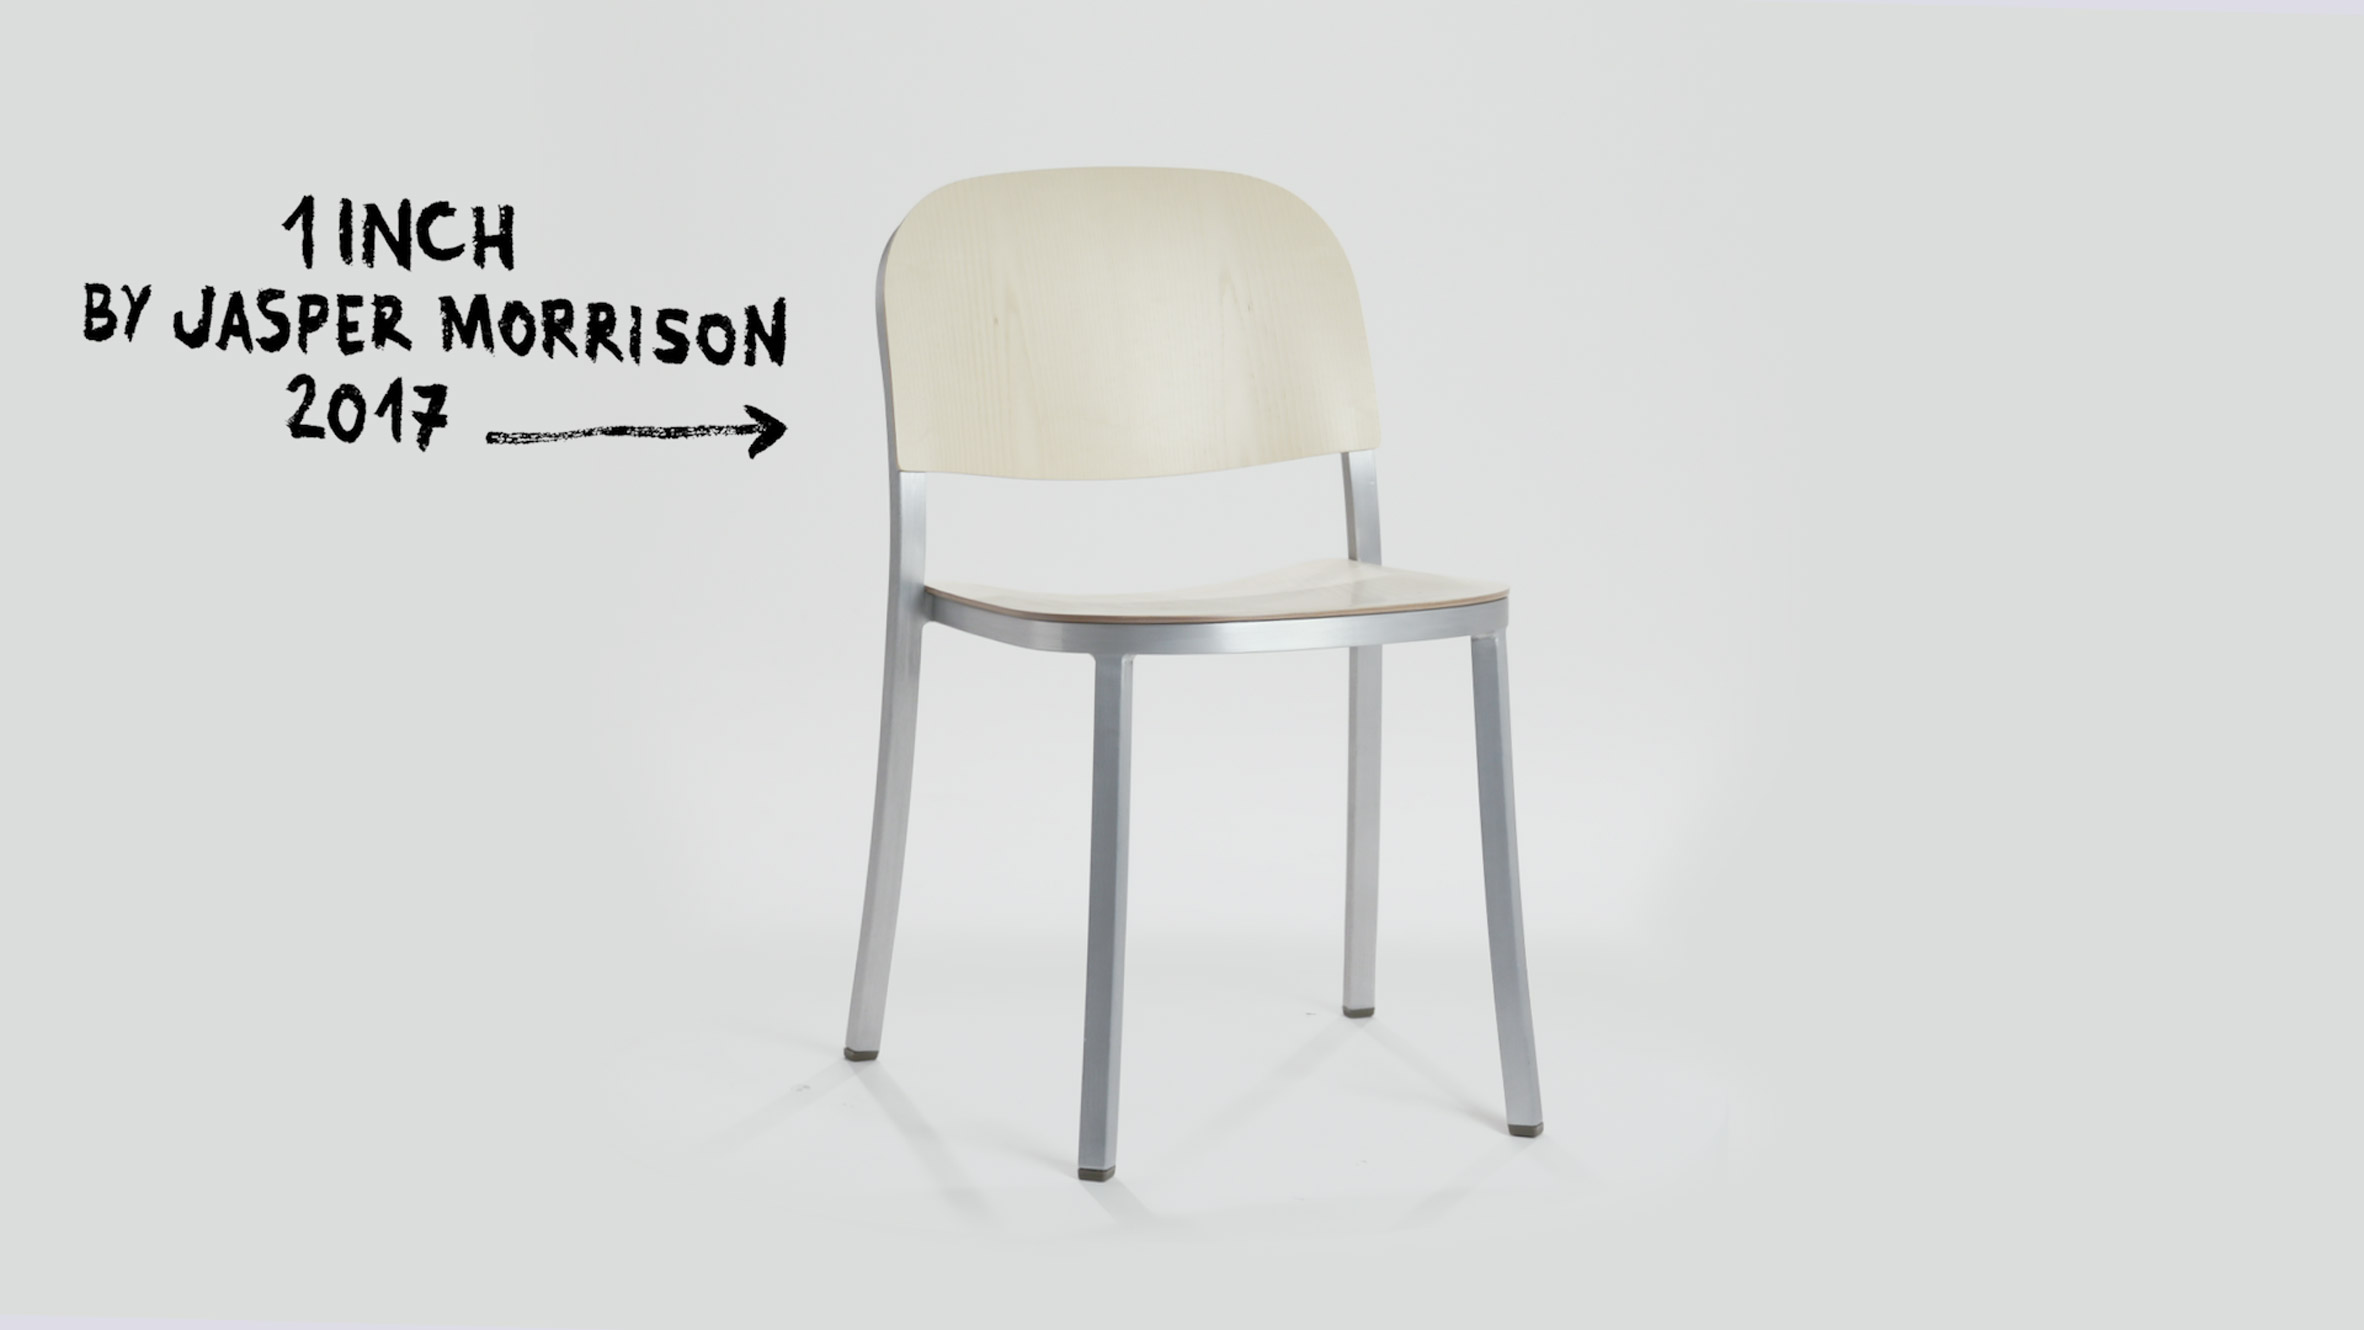 1 Inch chair by Jasper Morrison